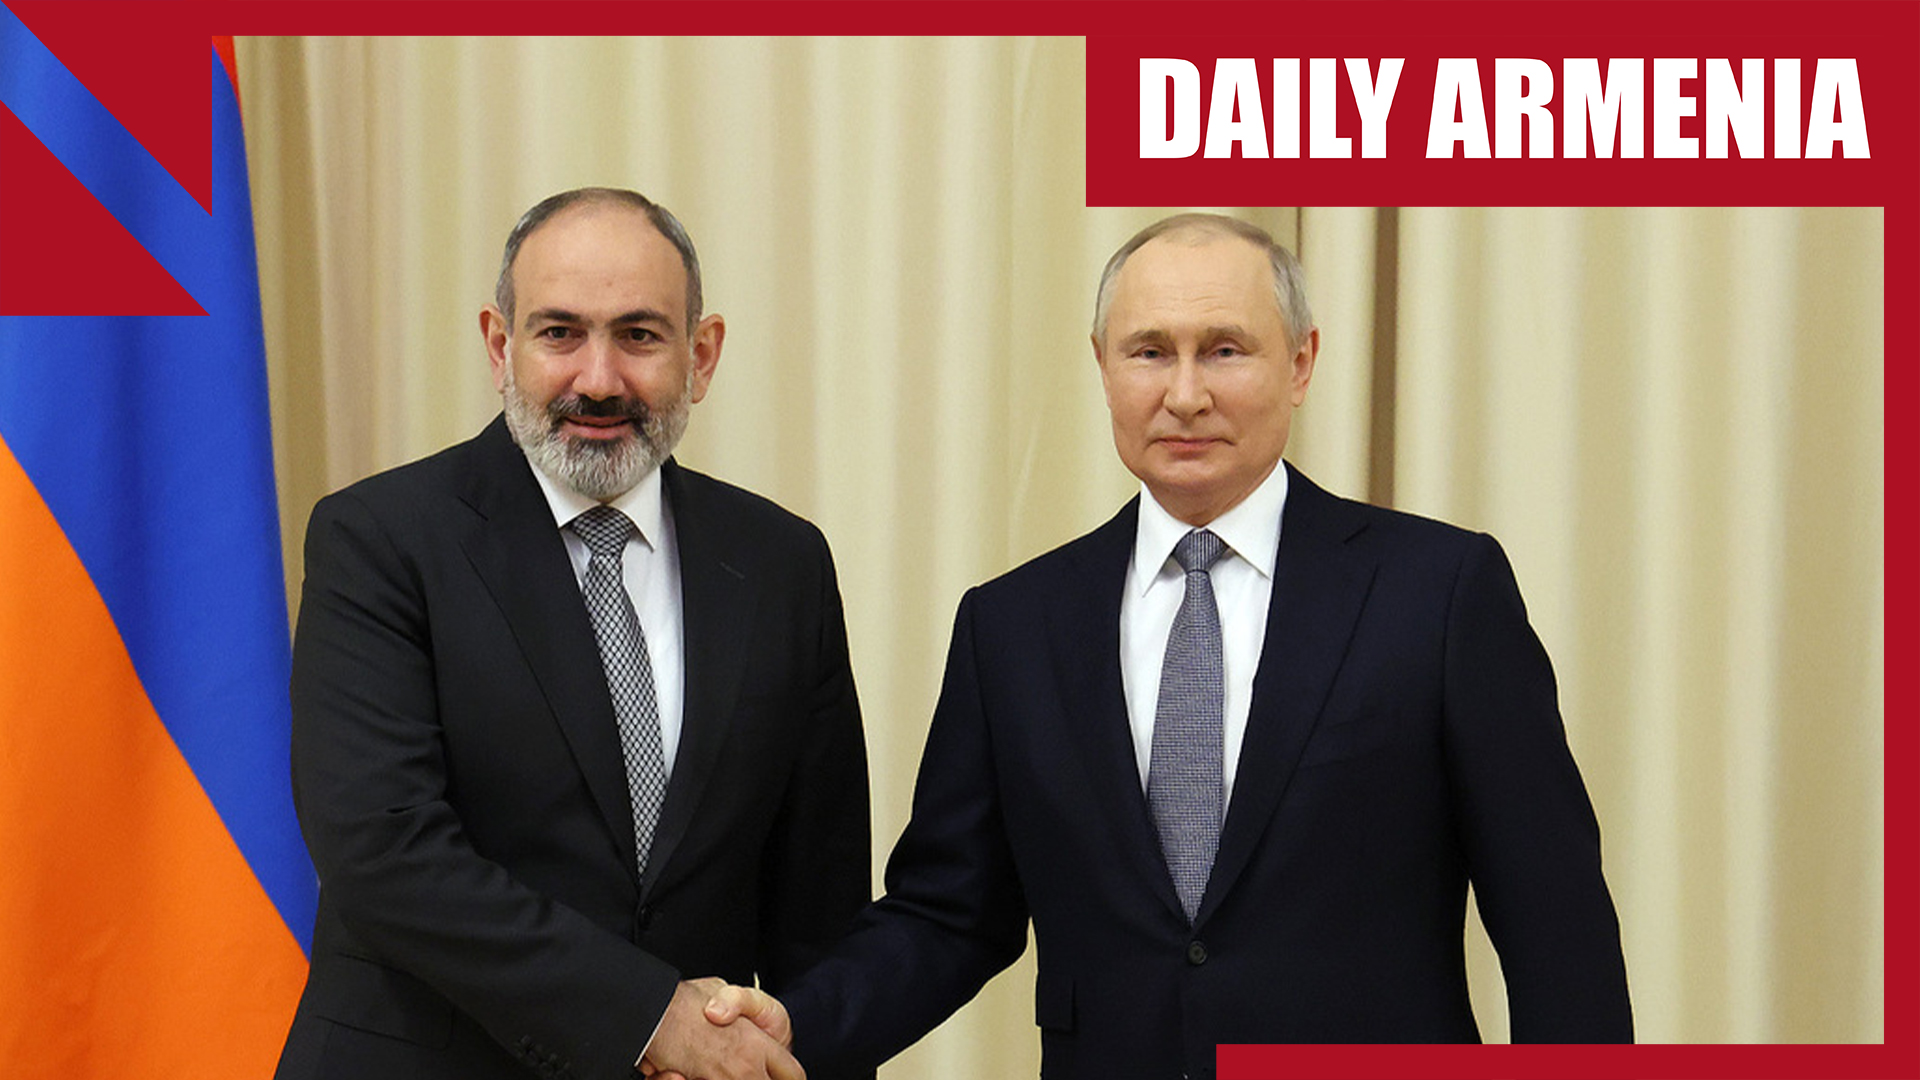 Pashinyan calls Putin to discuss humanitarian crisis in Karabakh